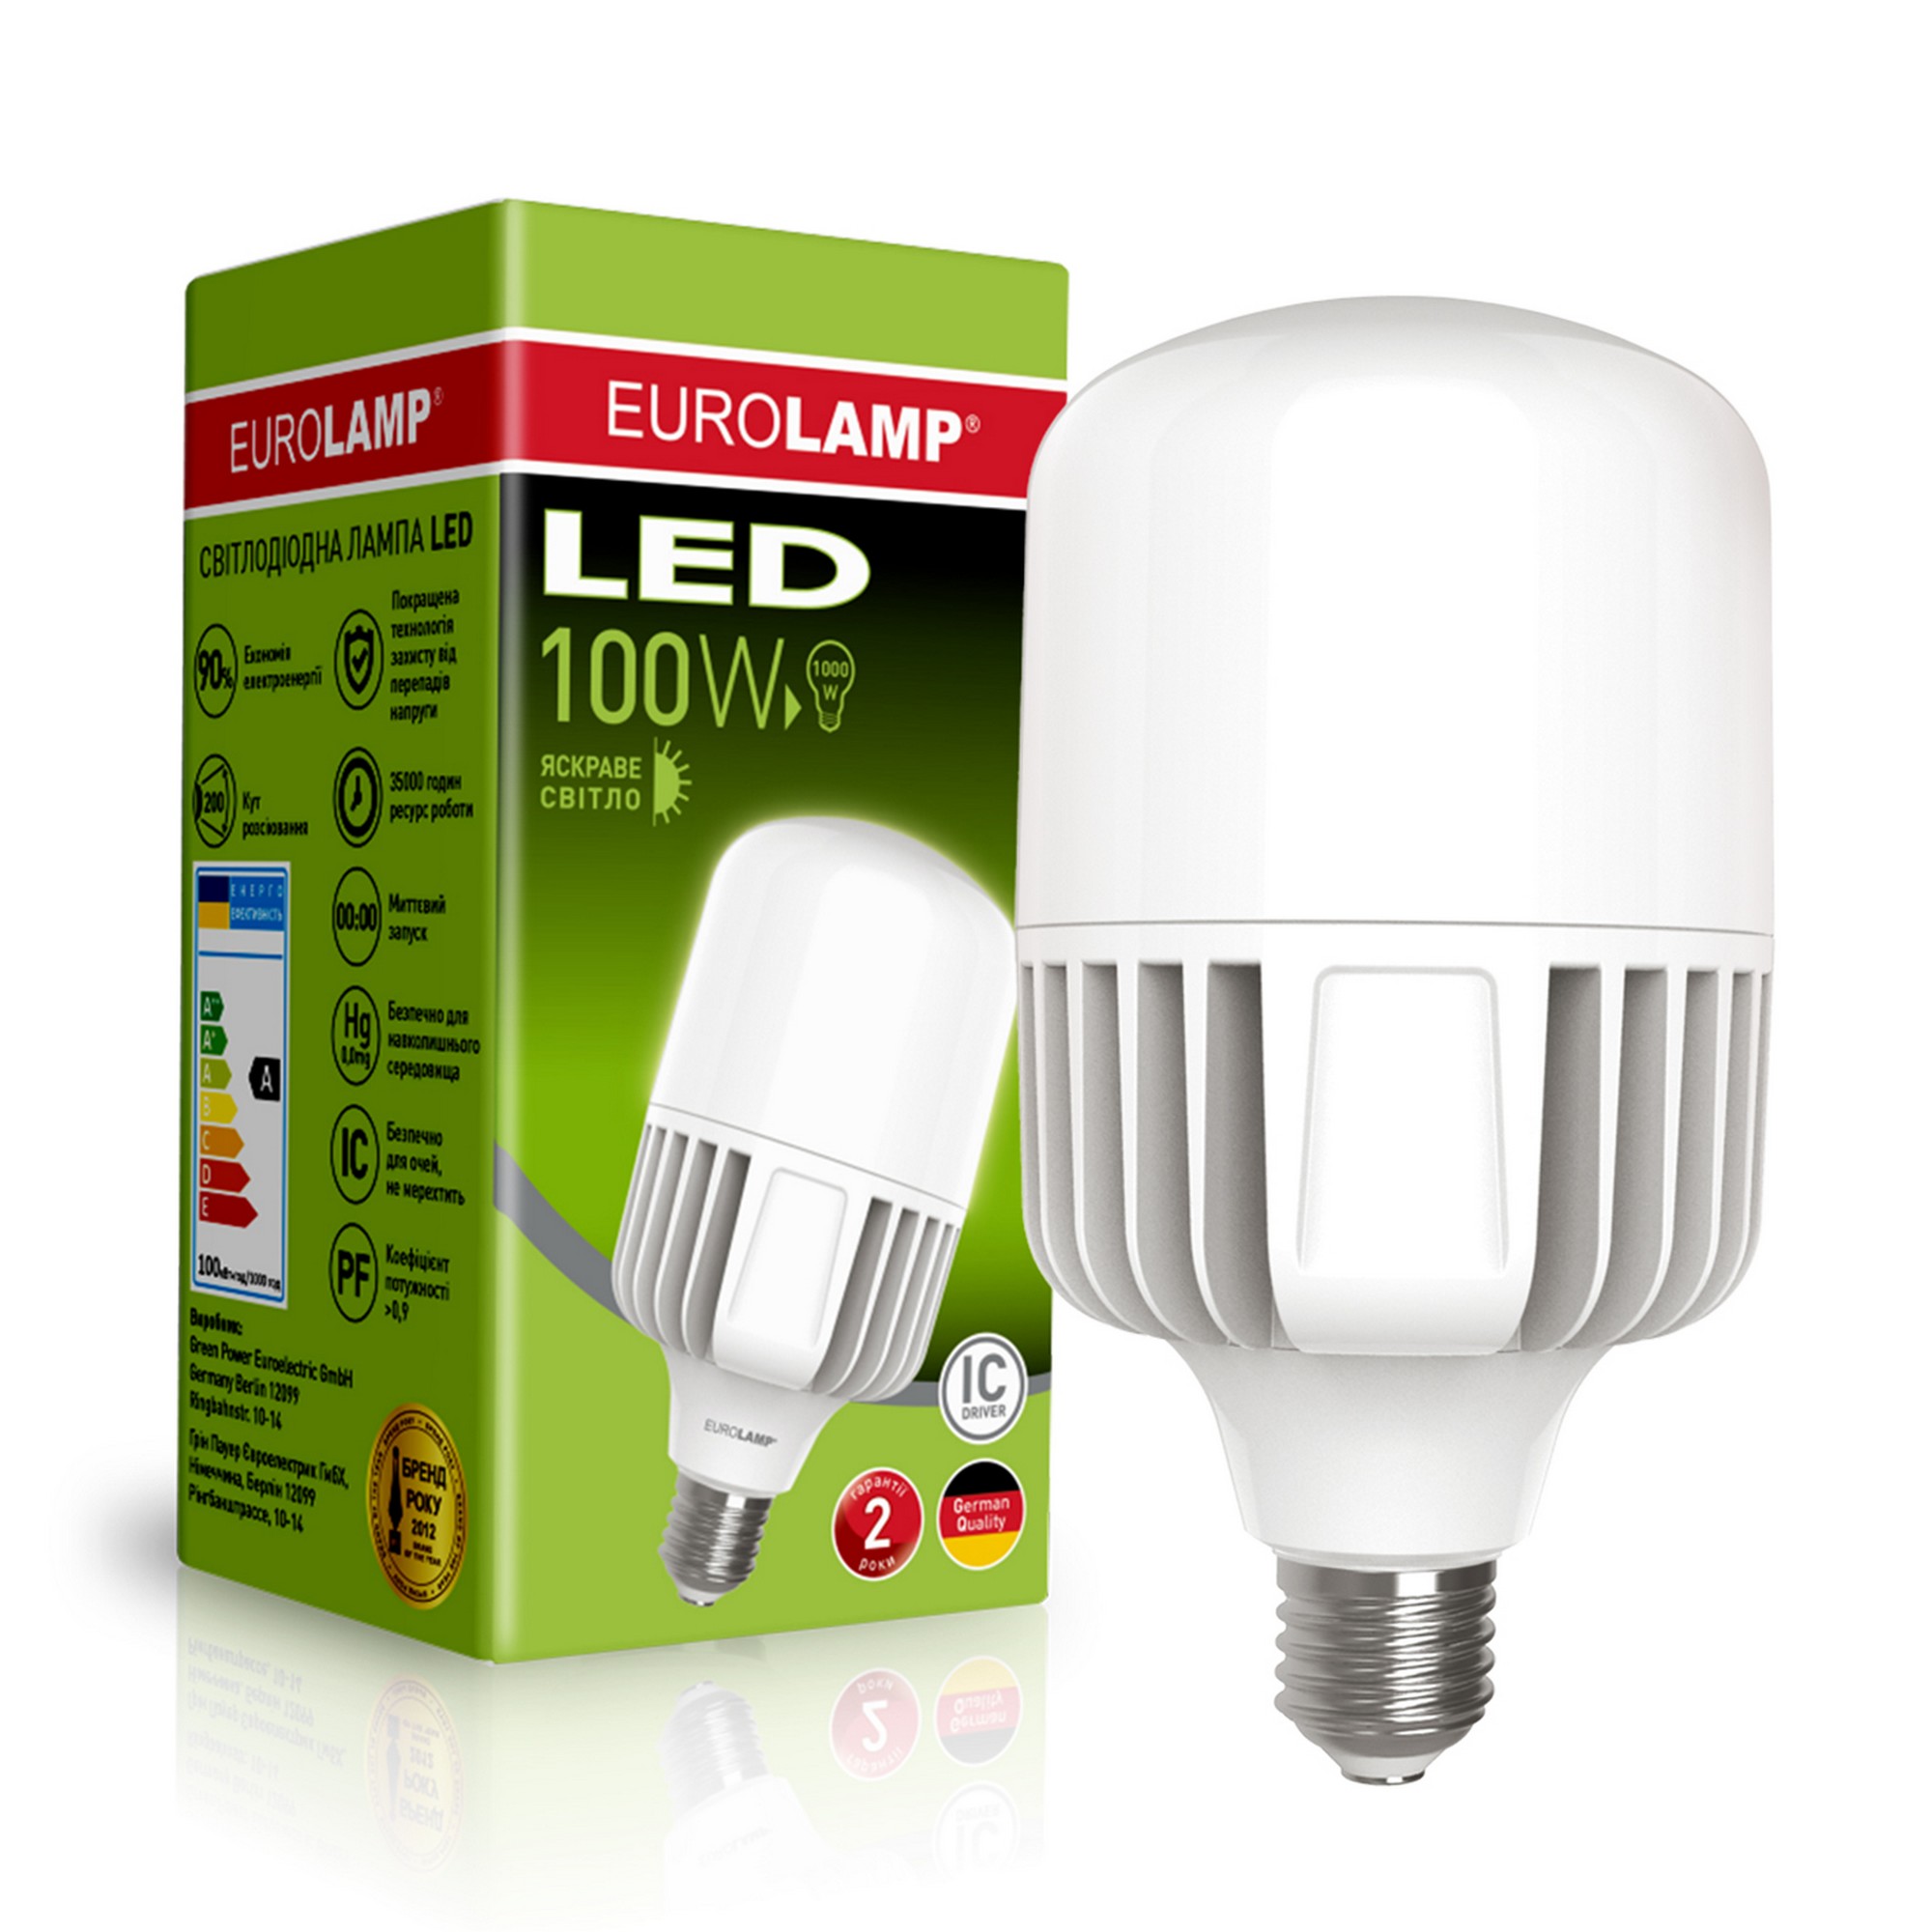 Відгуки світлодіодна лампа eurolamp потужністю 100 вт Eurolamp LED 100W E40 5000K в Україні